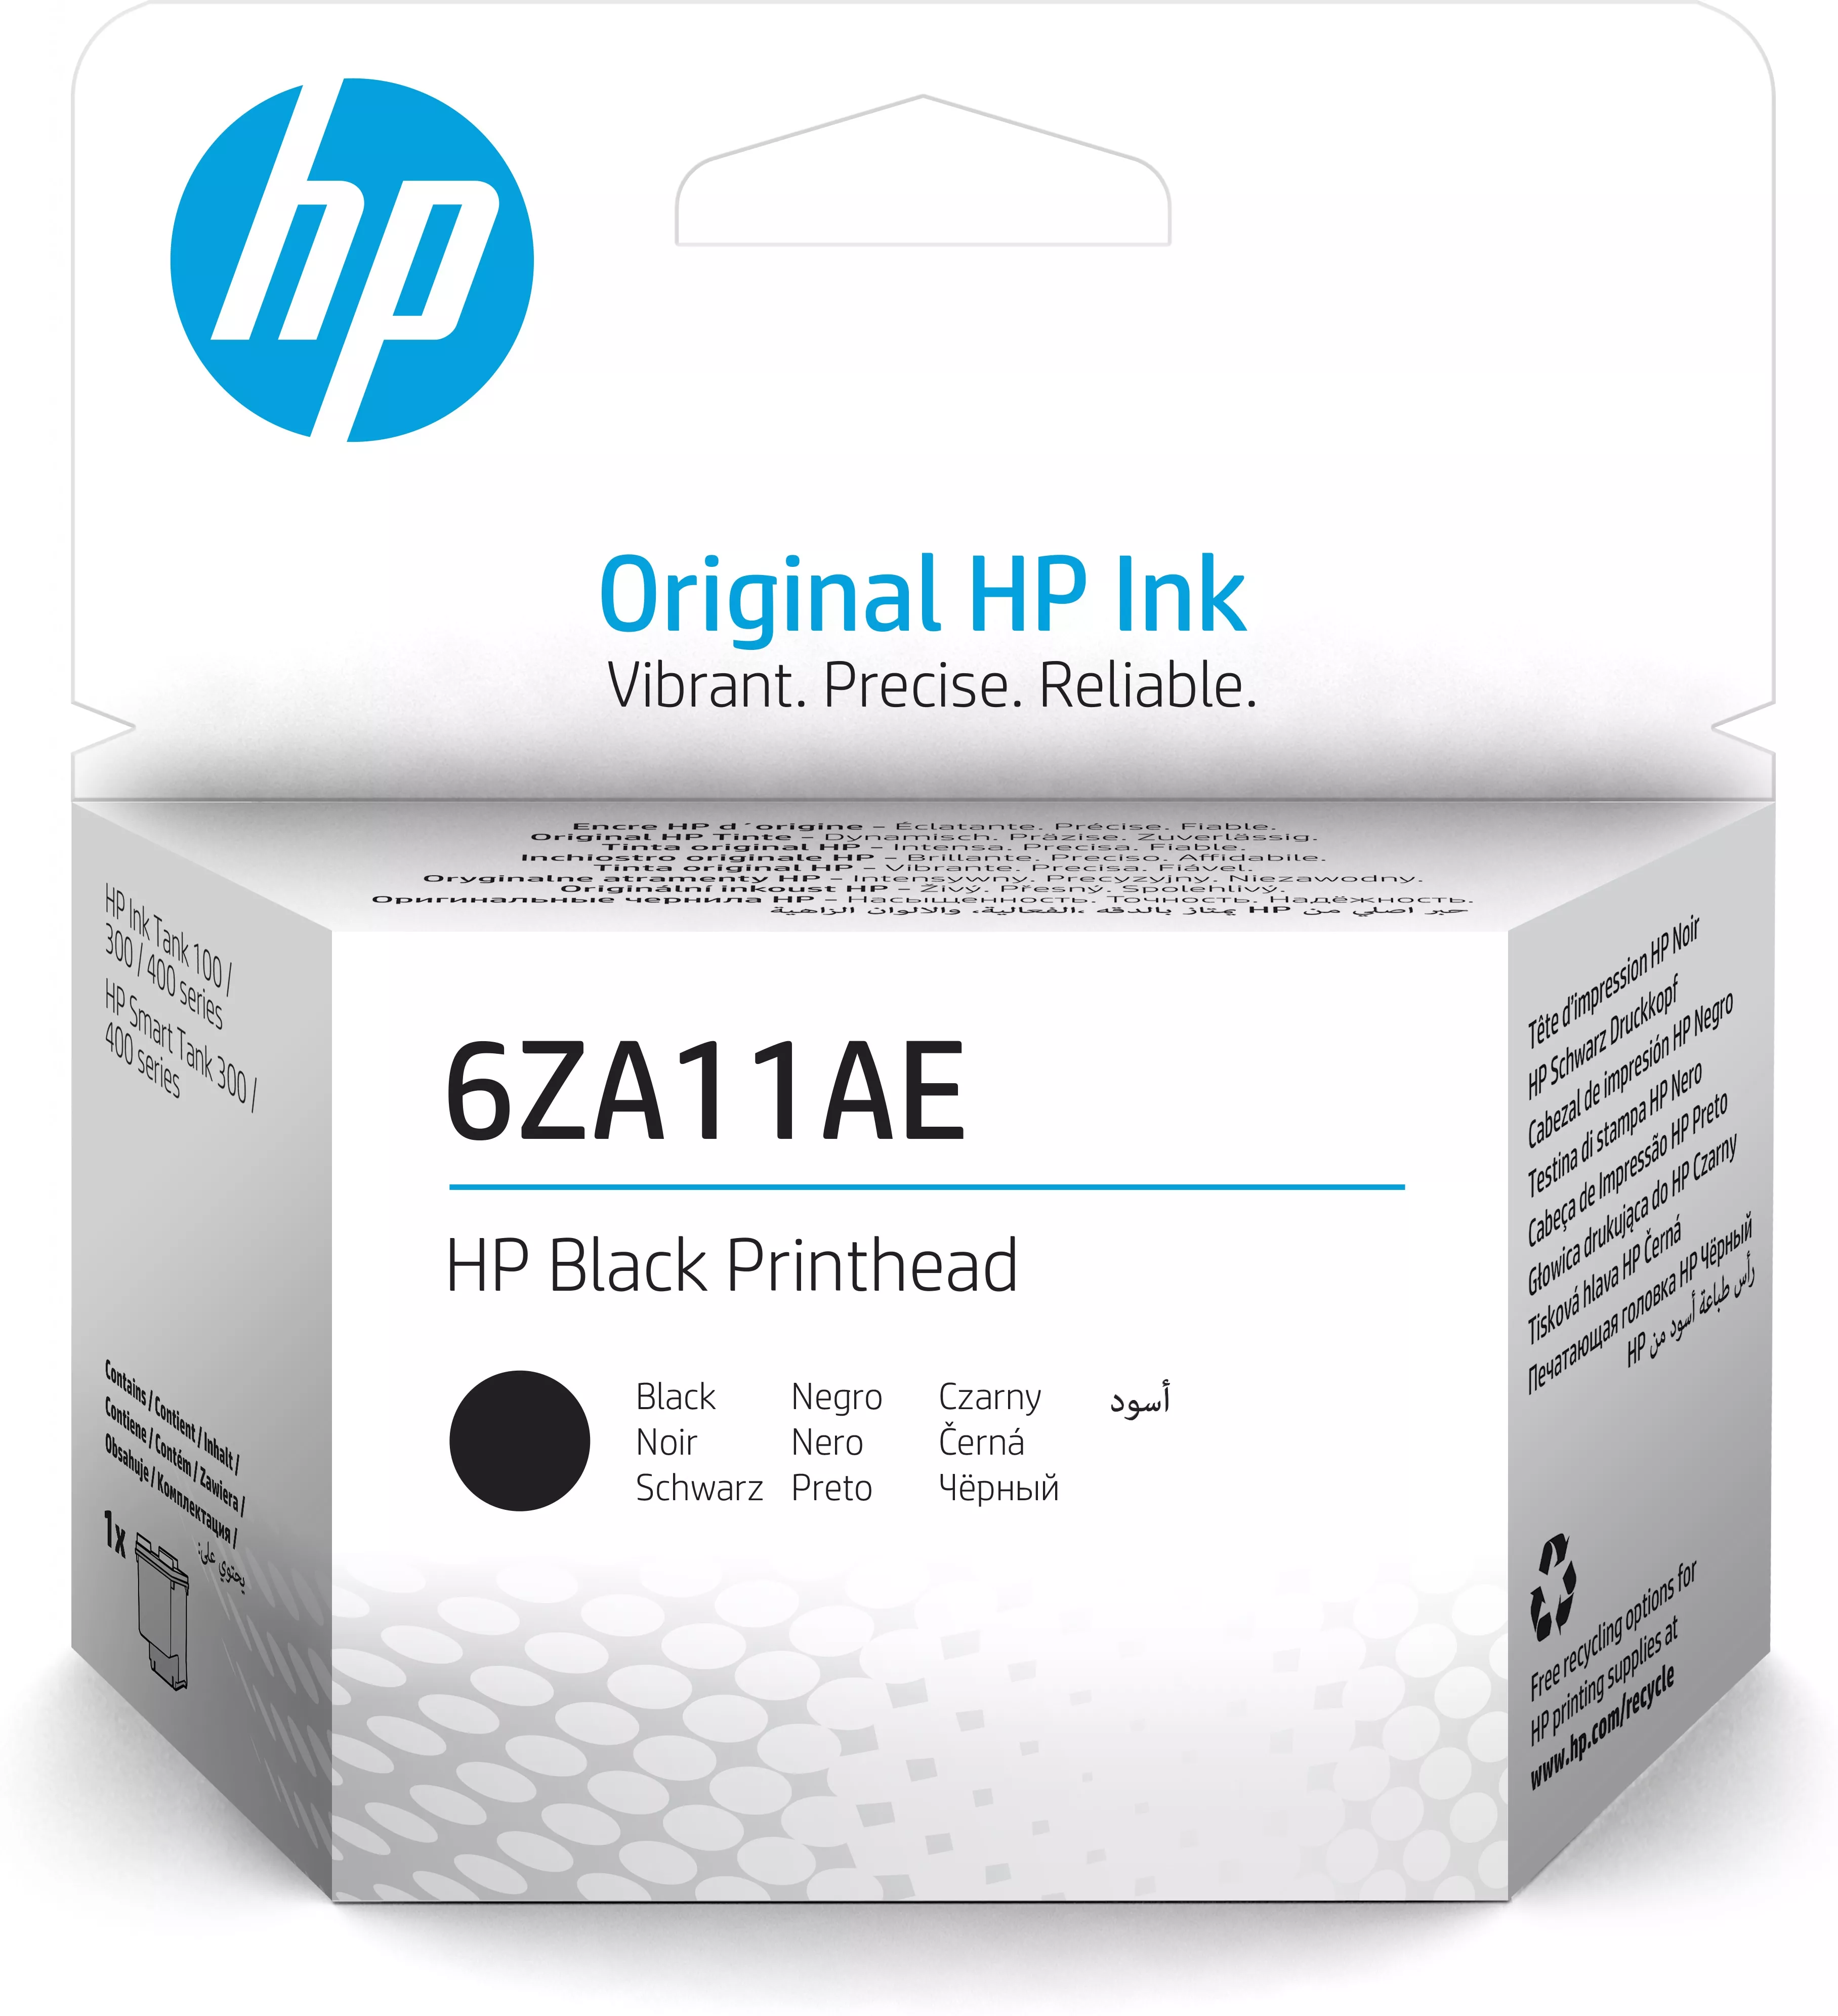 Achat HP Black Printhead et autres produits de la marque HP